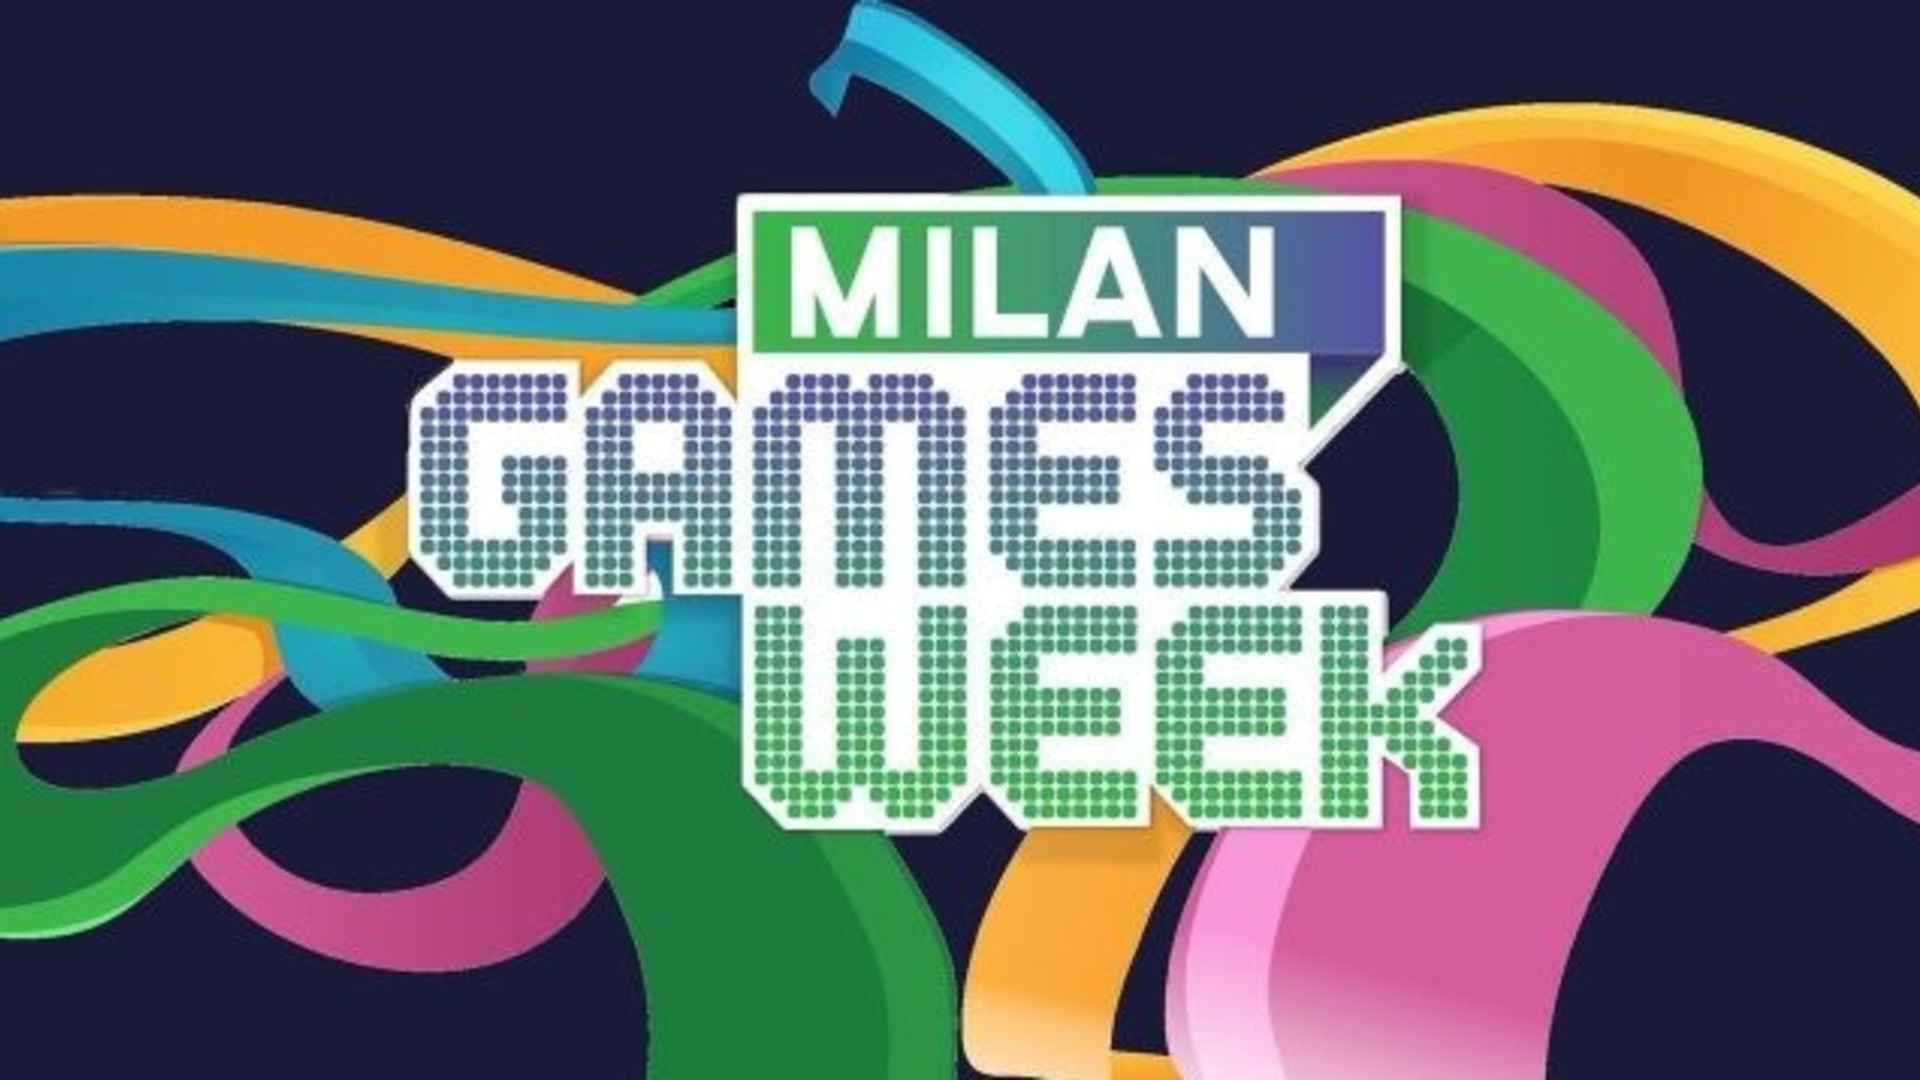 Milan Games Week 2019